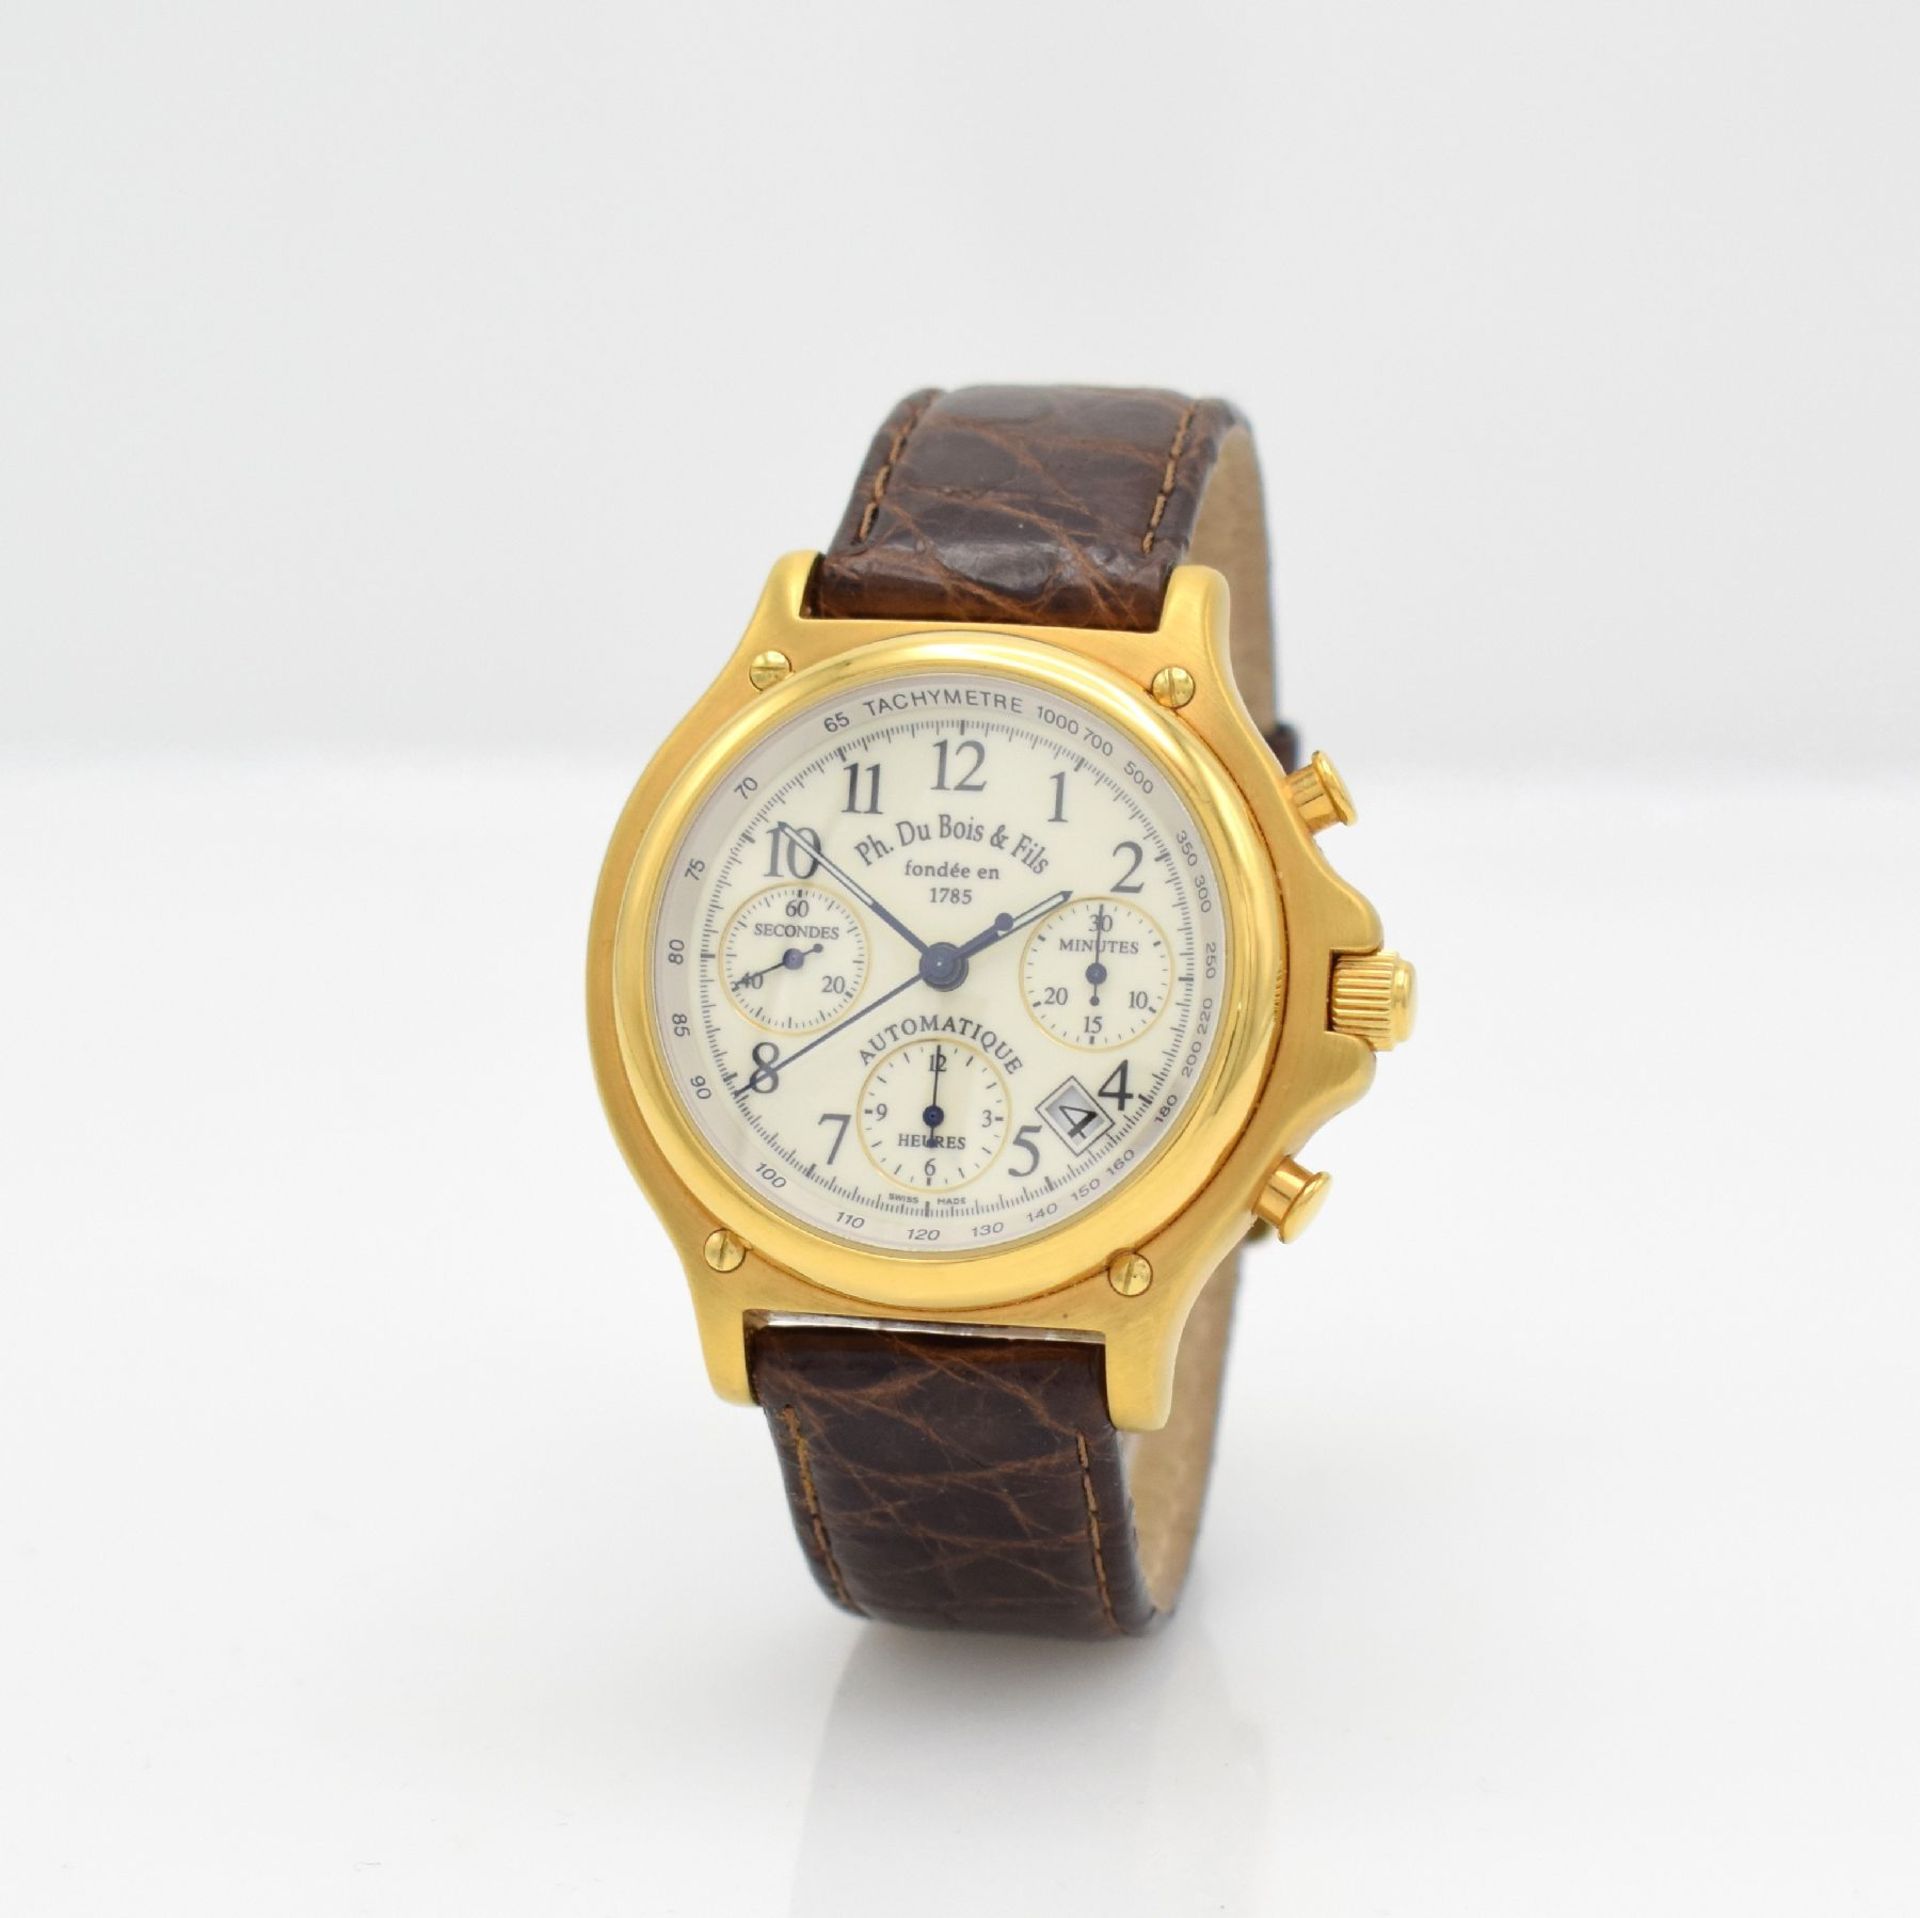 DU BOIS Regular 1 gents chronograph, Switzerland around 2000, self winding, gold plated case, - Bild 3 aus 7